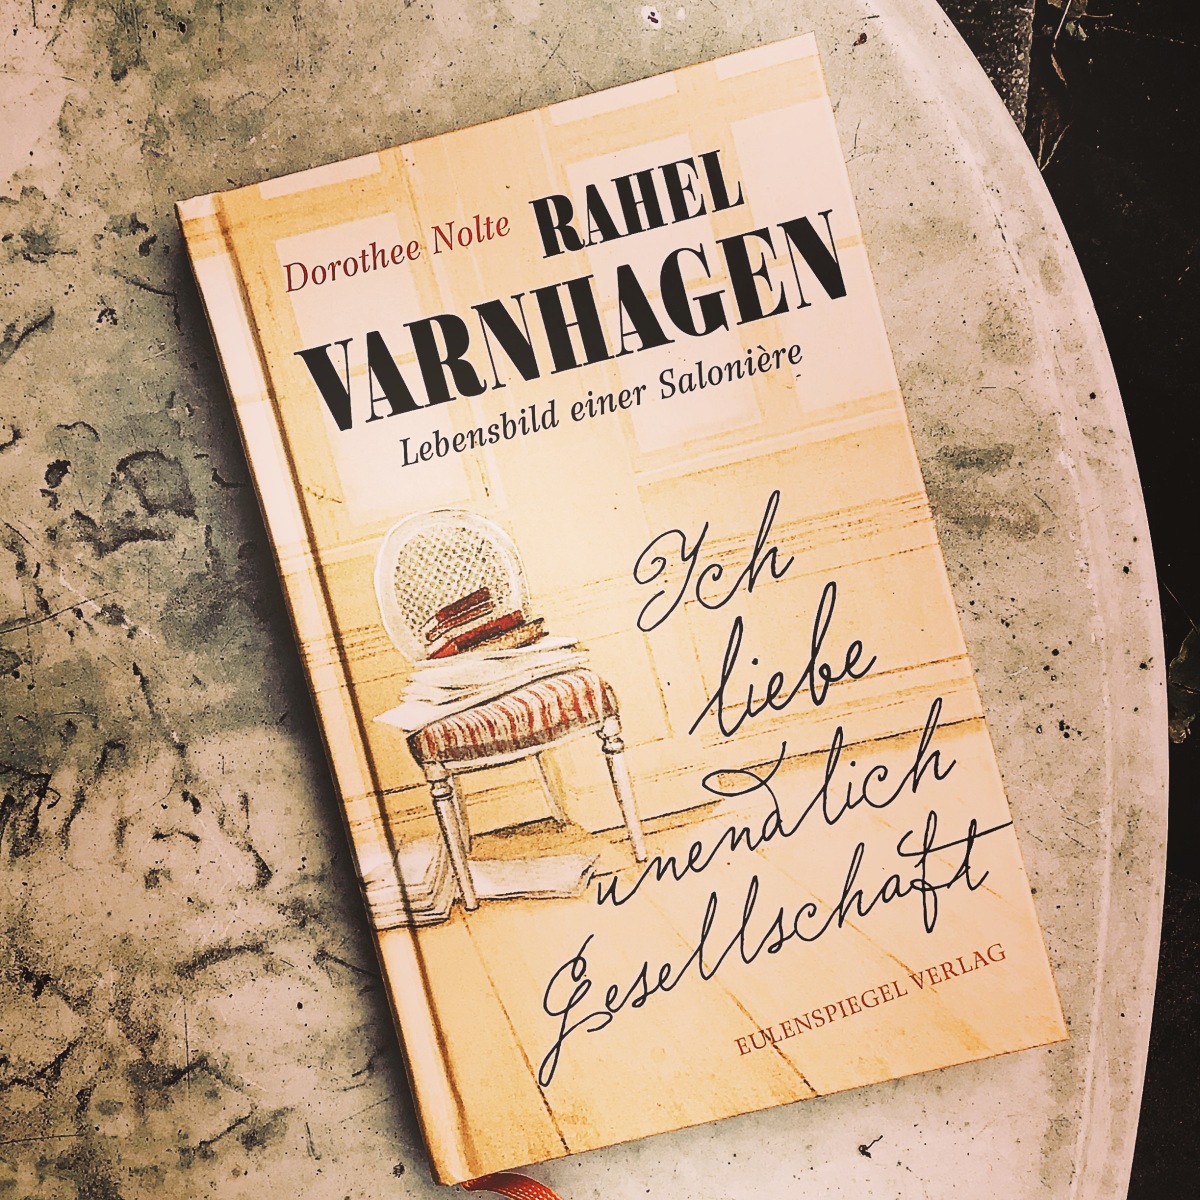 „Rahel Varnhagen. Lebensbild einer Salonière“ von Dorothee Nolte